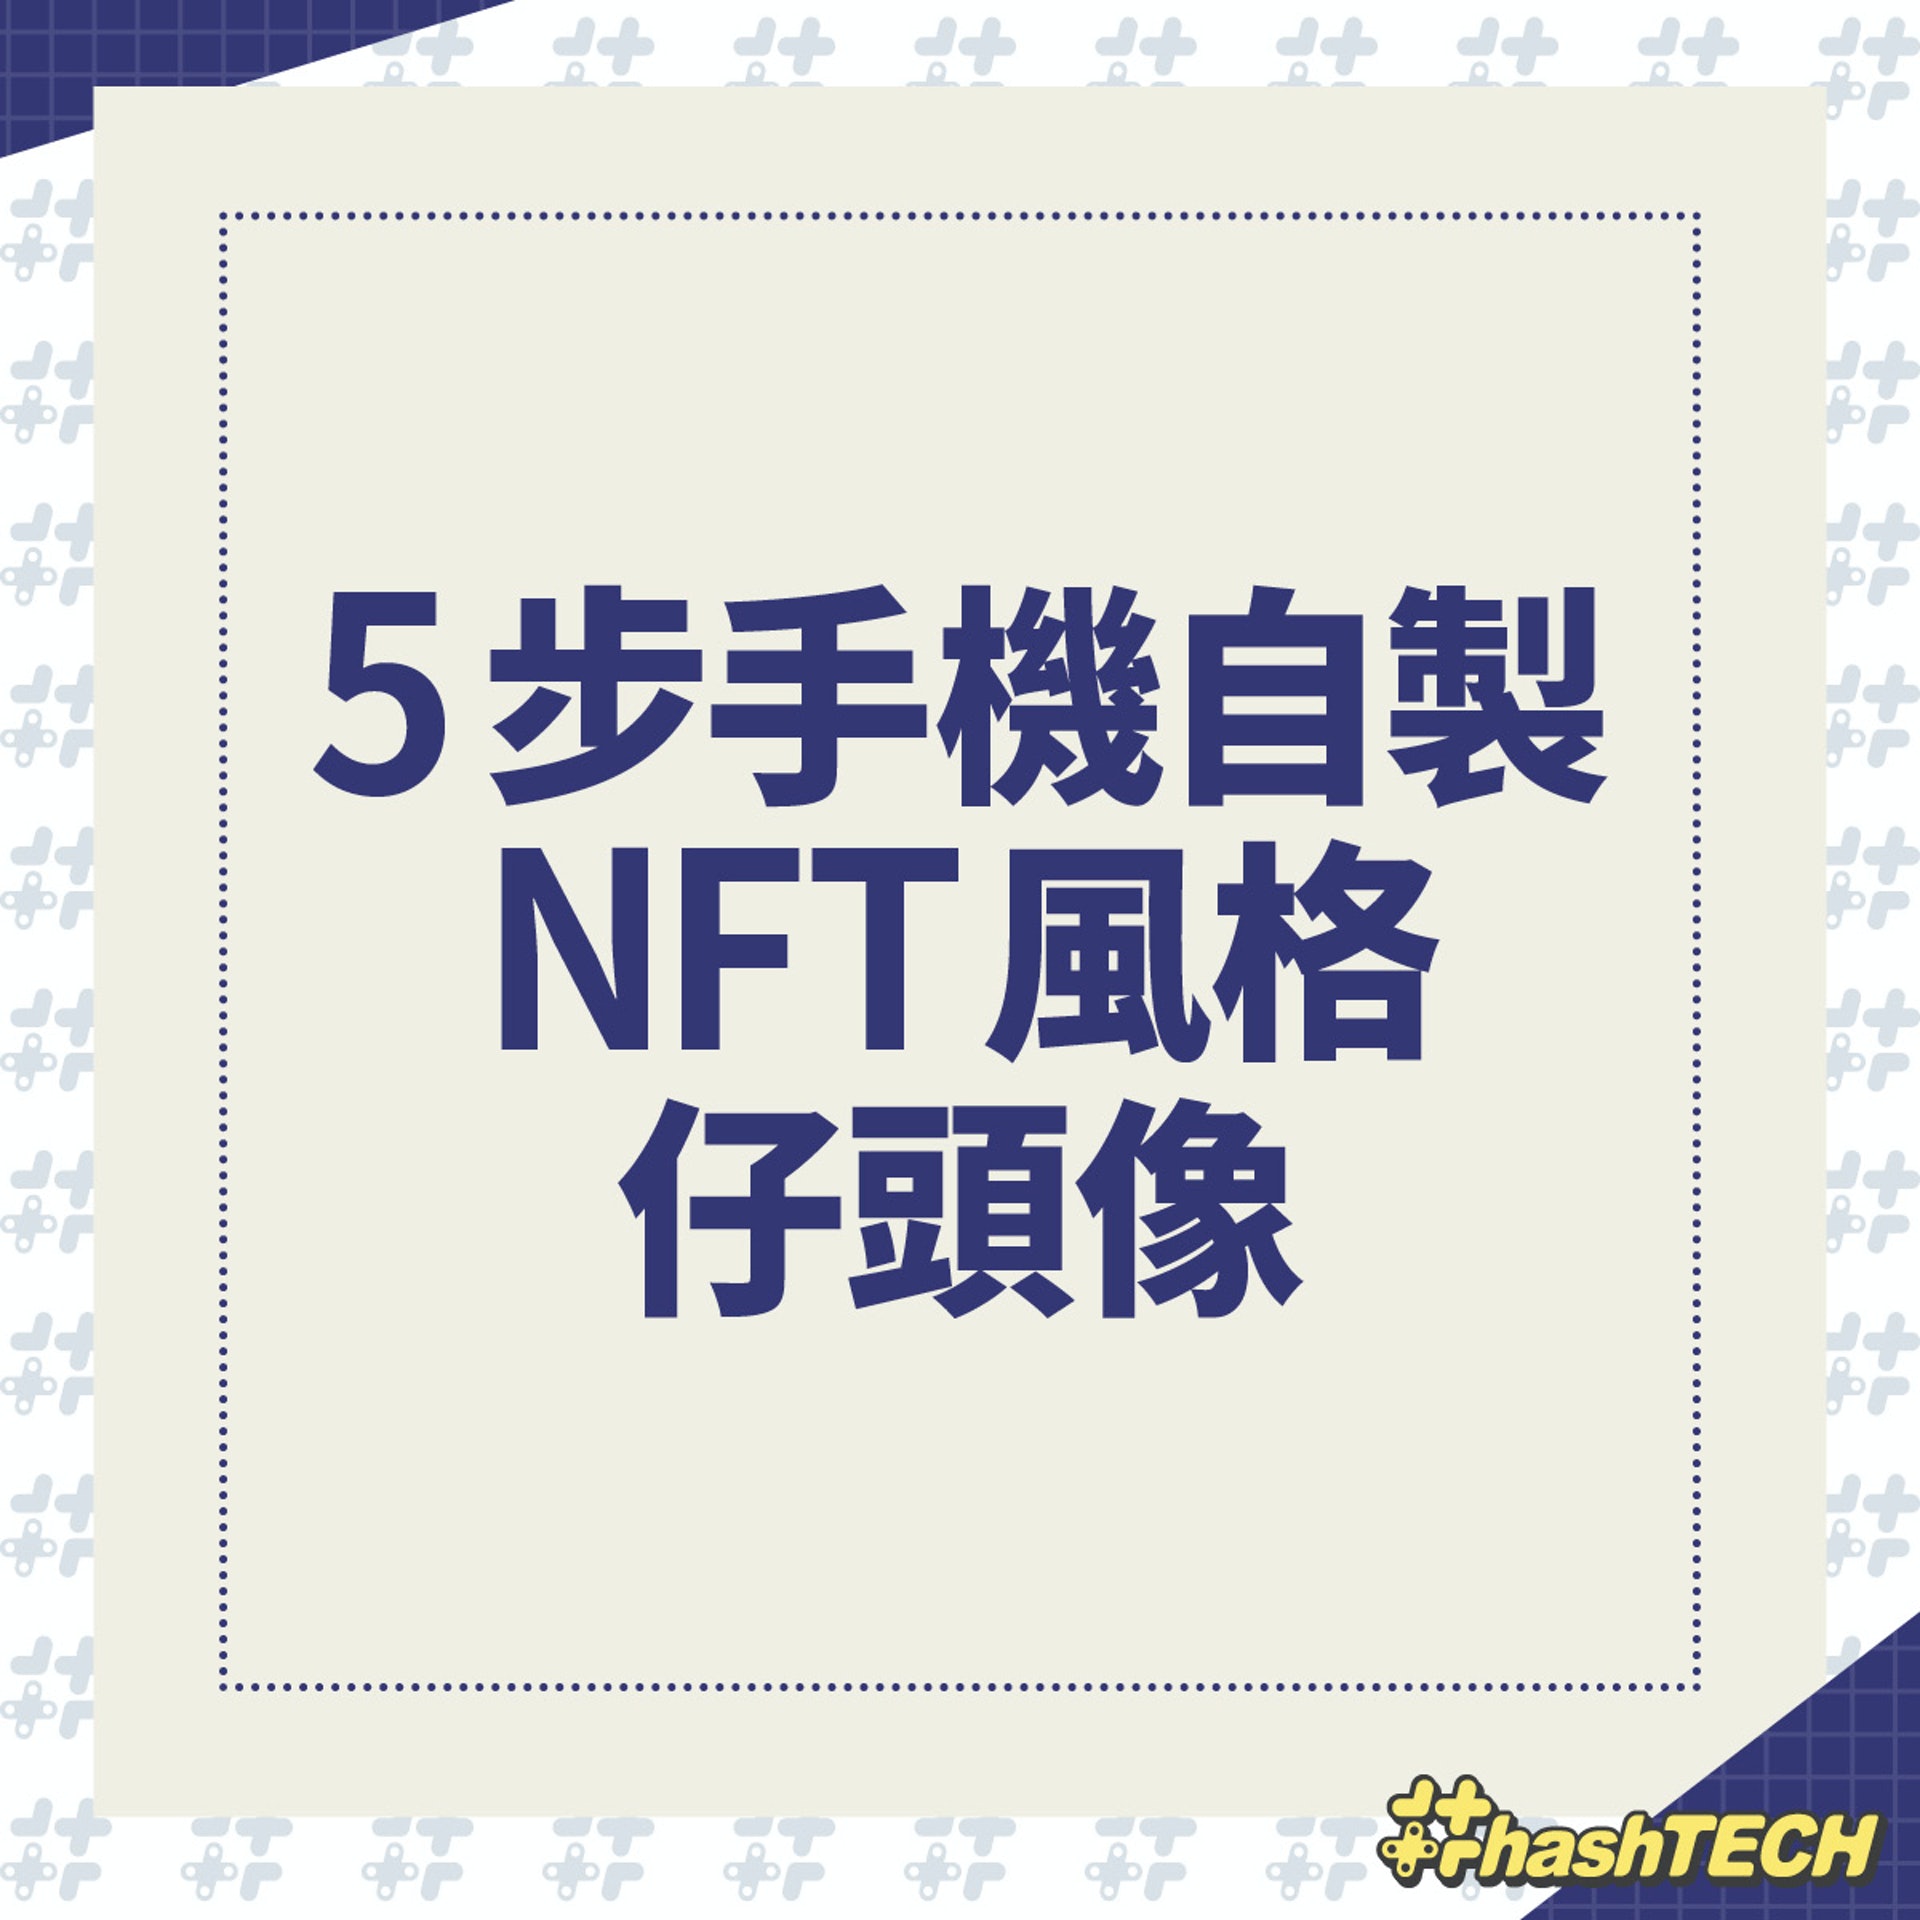 5 步自製 NFT 像素風格頭像